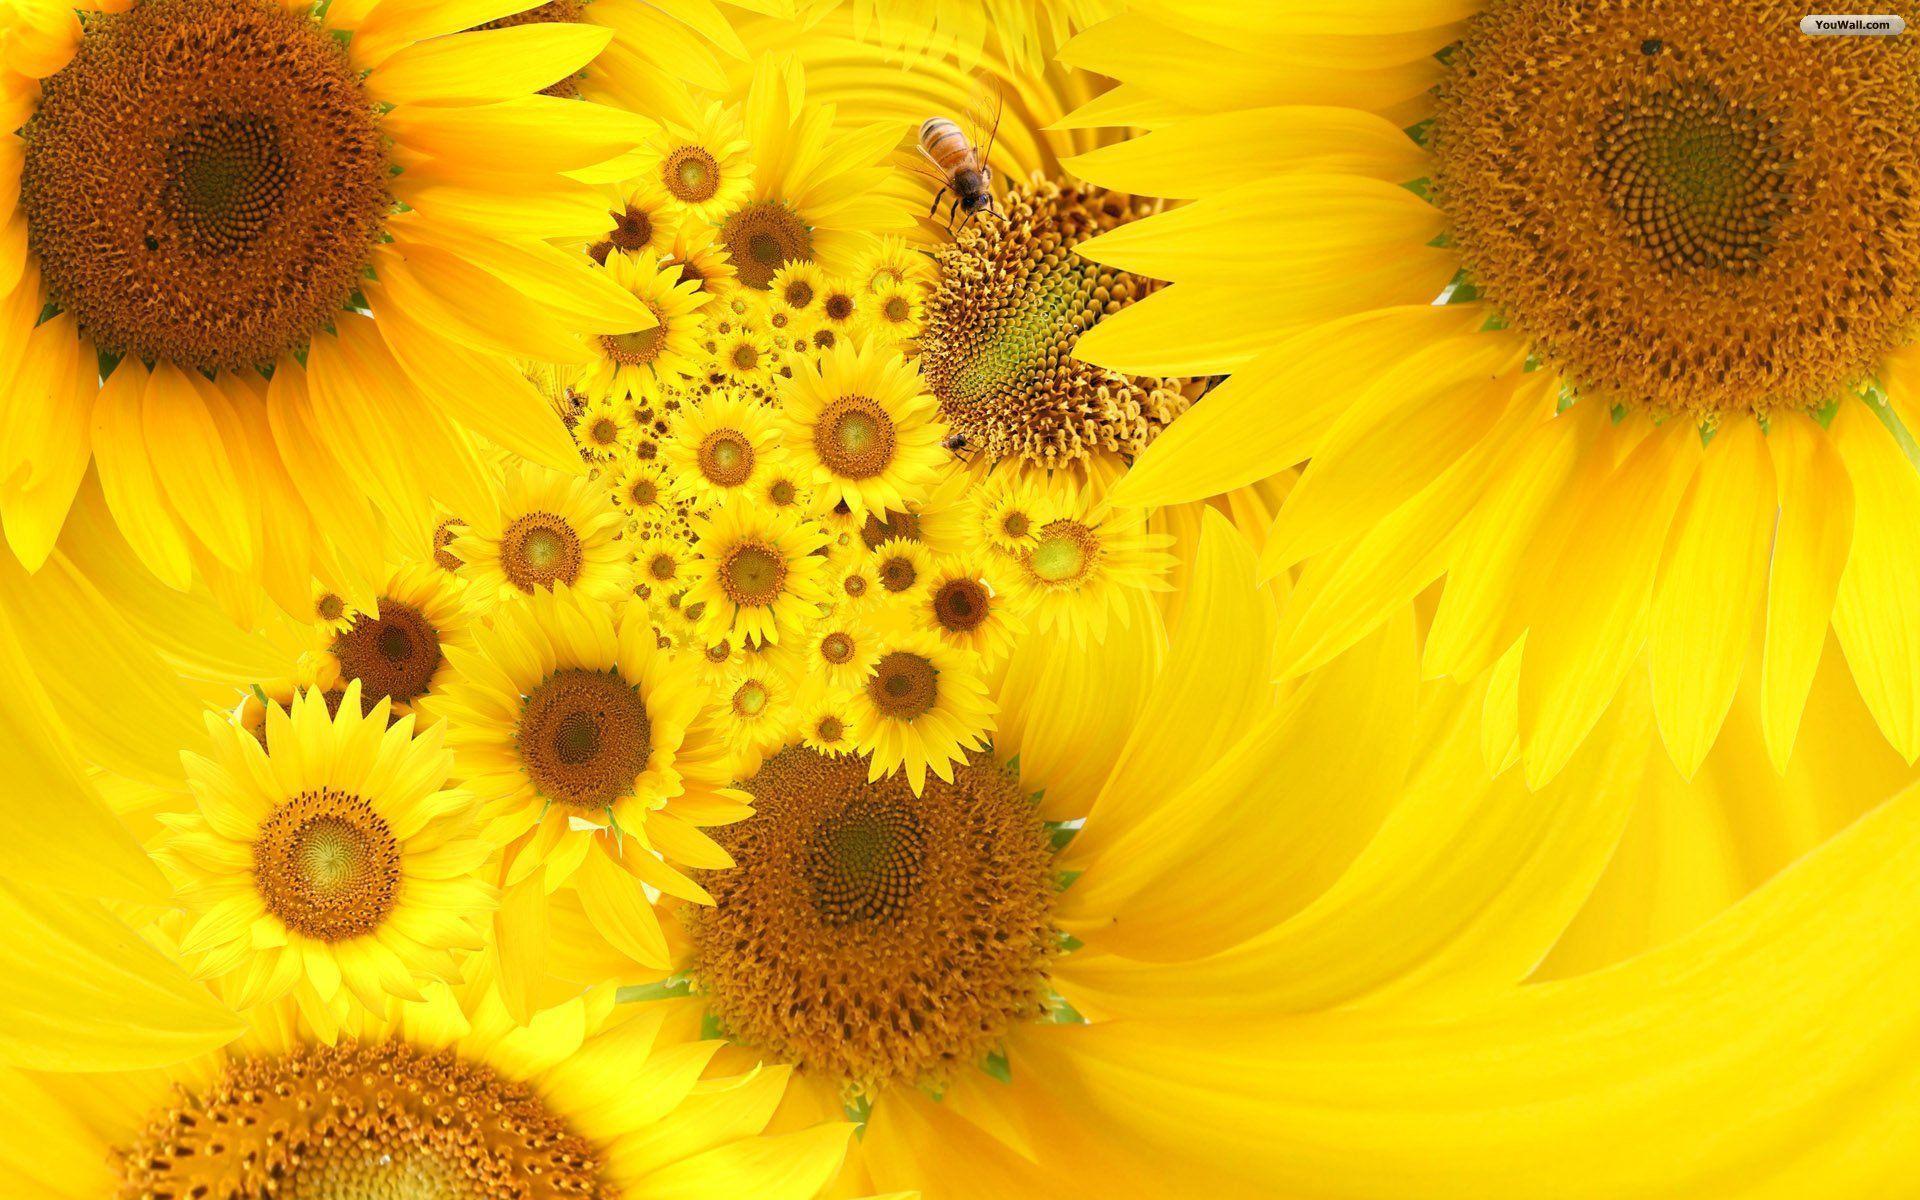 Sunflowers Wallpapers sẽ làm sống động hơn không gian làm việc hoặc phòng khách của bạn với những bức ảnh chất lượng cao về những bông hoa tươi đẹp và rực rỡ. Cùng tận hưởng sự mới lạ và độc đáo của bộ sưu tập này.